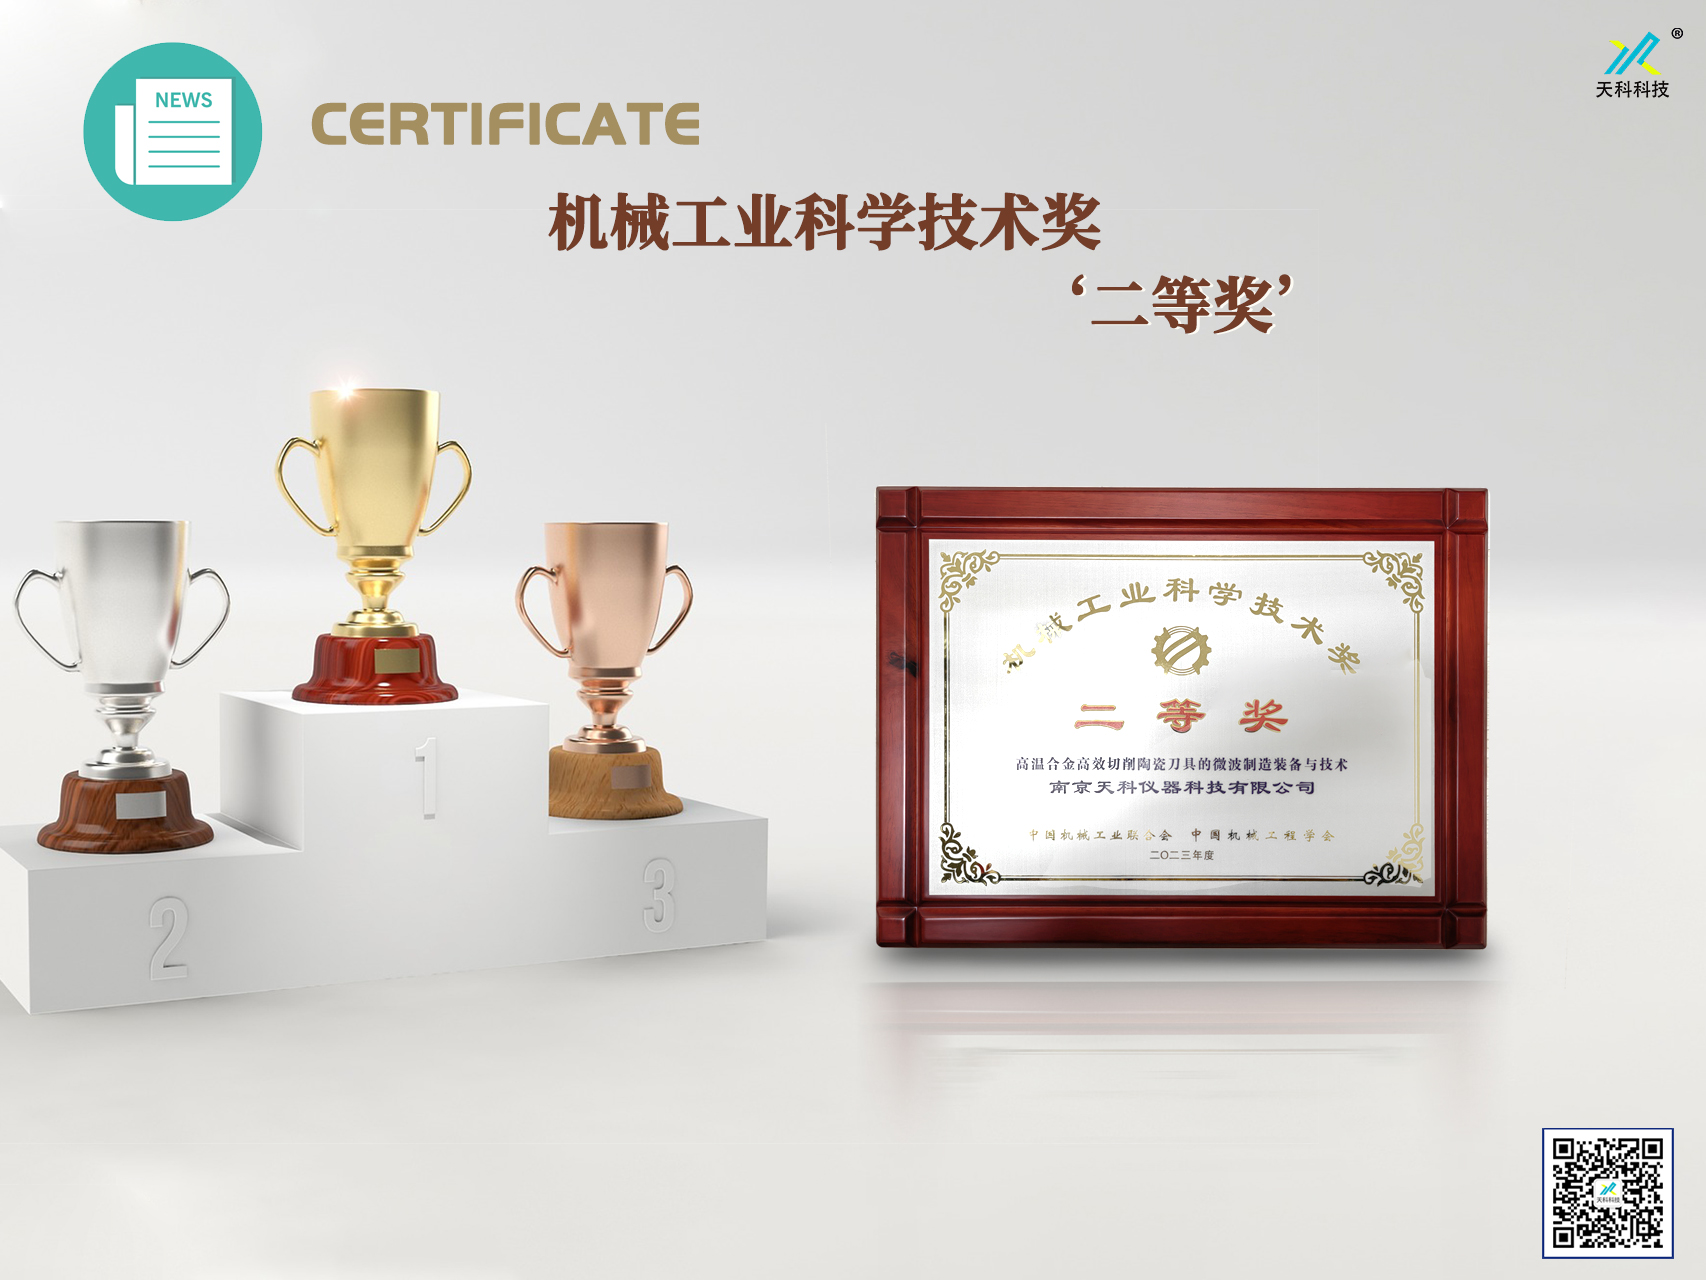 南京天科荣获机械工业科学技术奖‘二等奖’殊荣